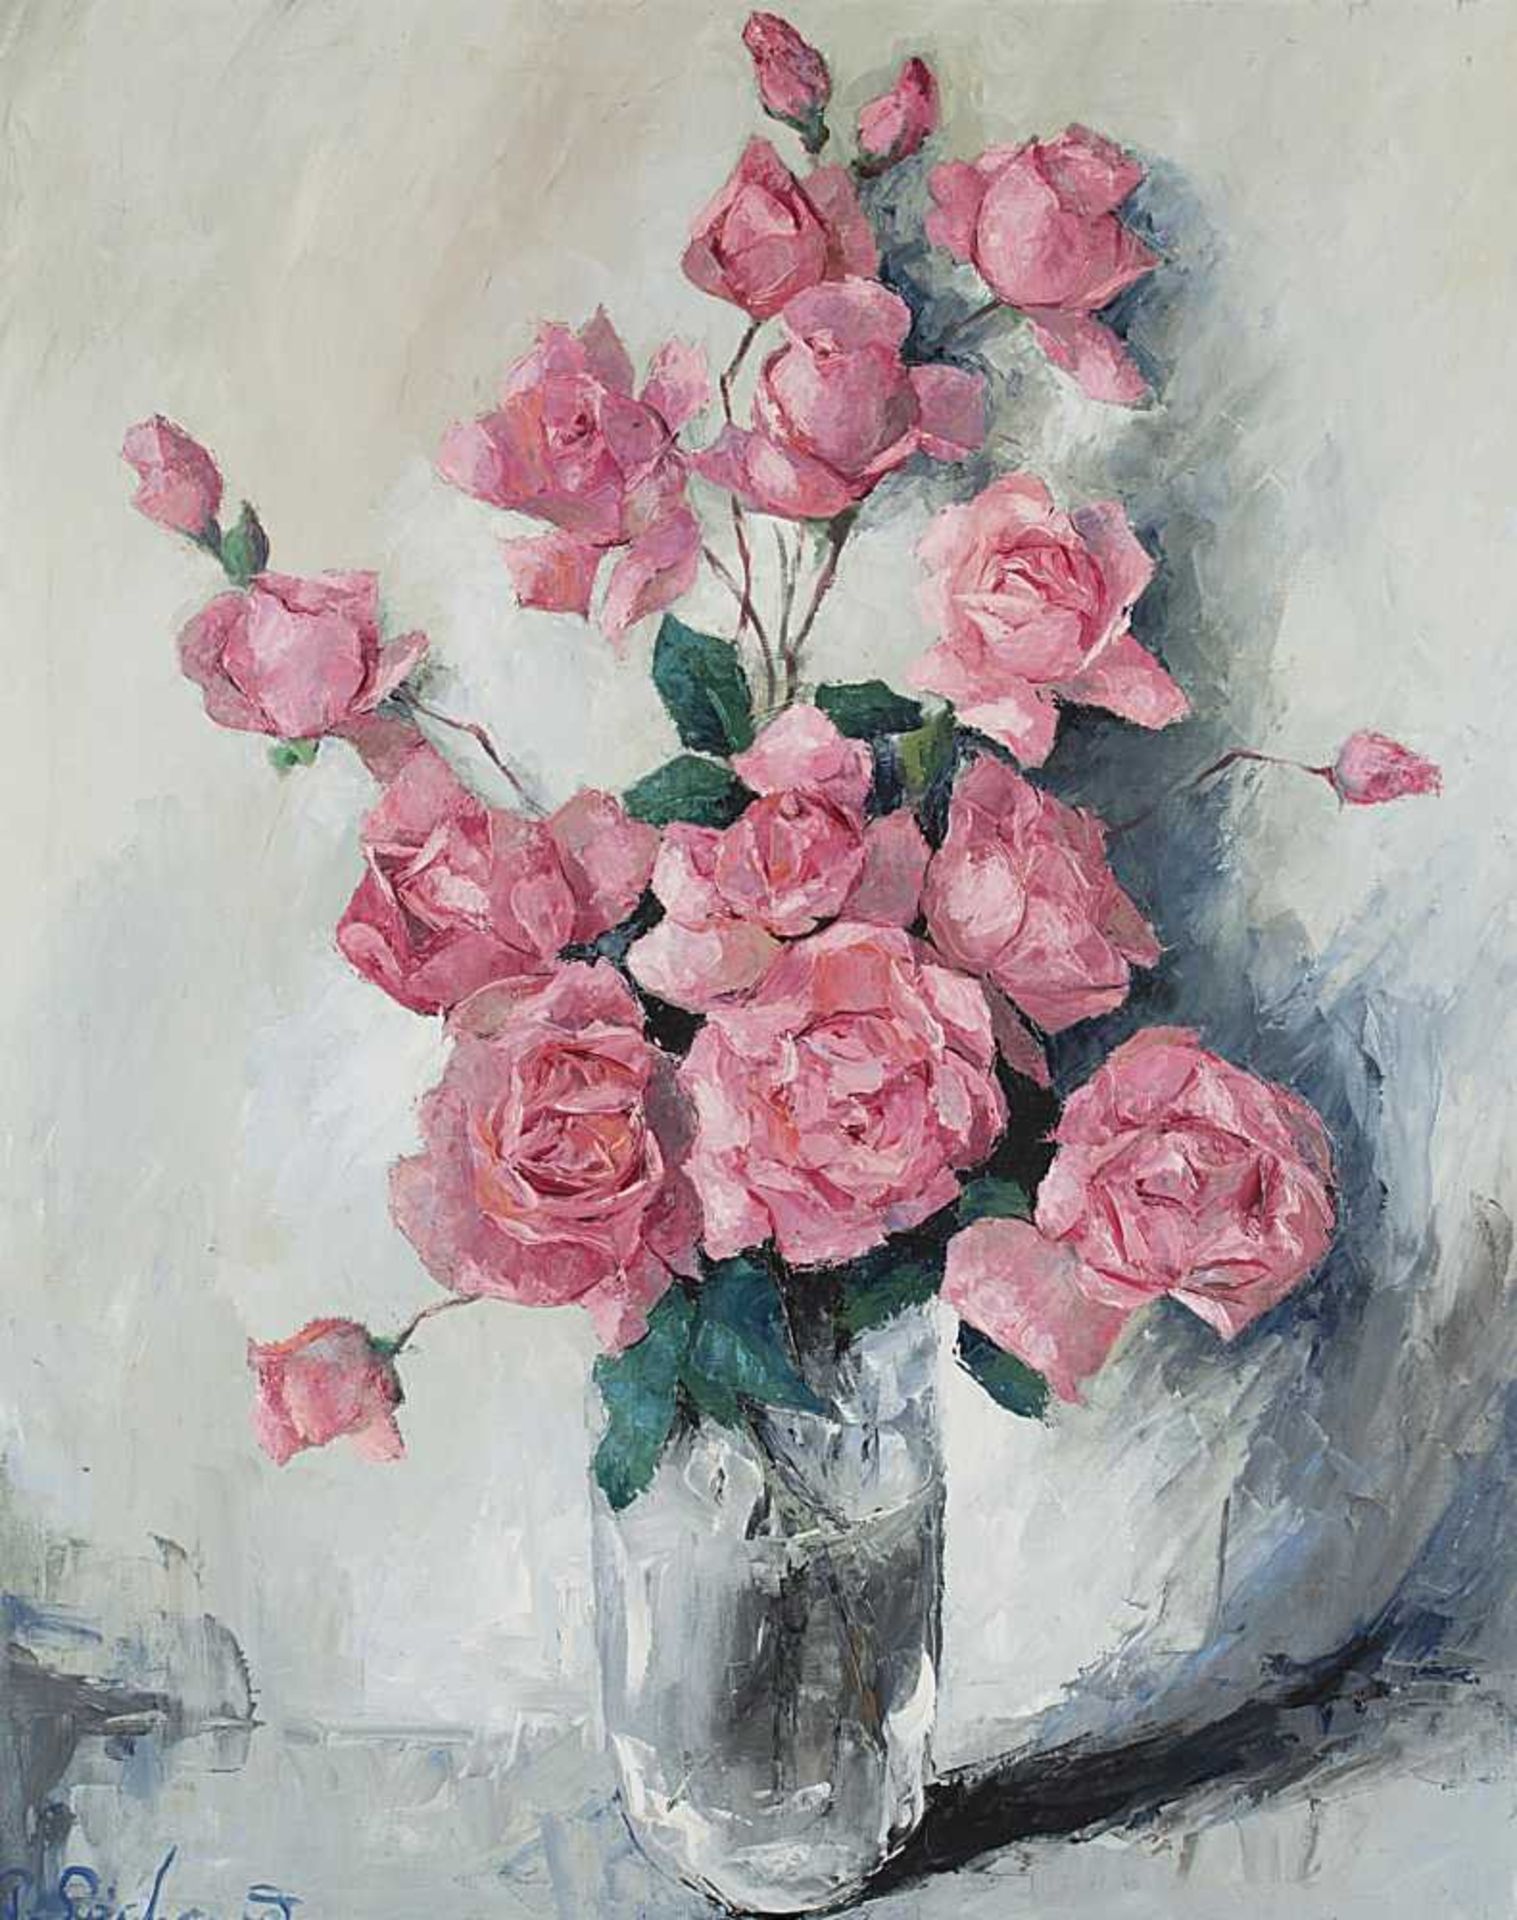 huile sur toile de Paul SÉCHAUD (1906-1982, CH) "Roses" sbg 81x65 cm